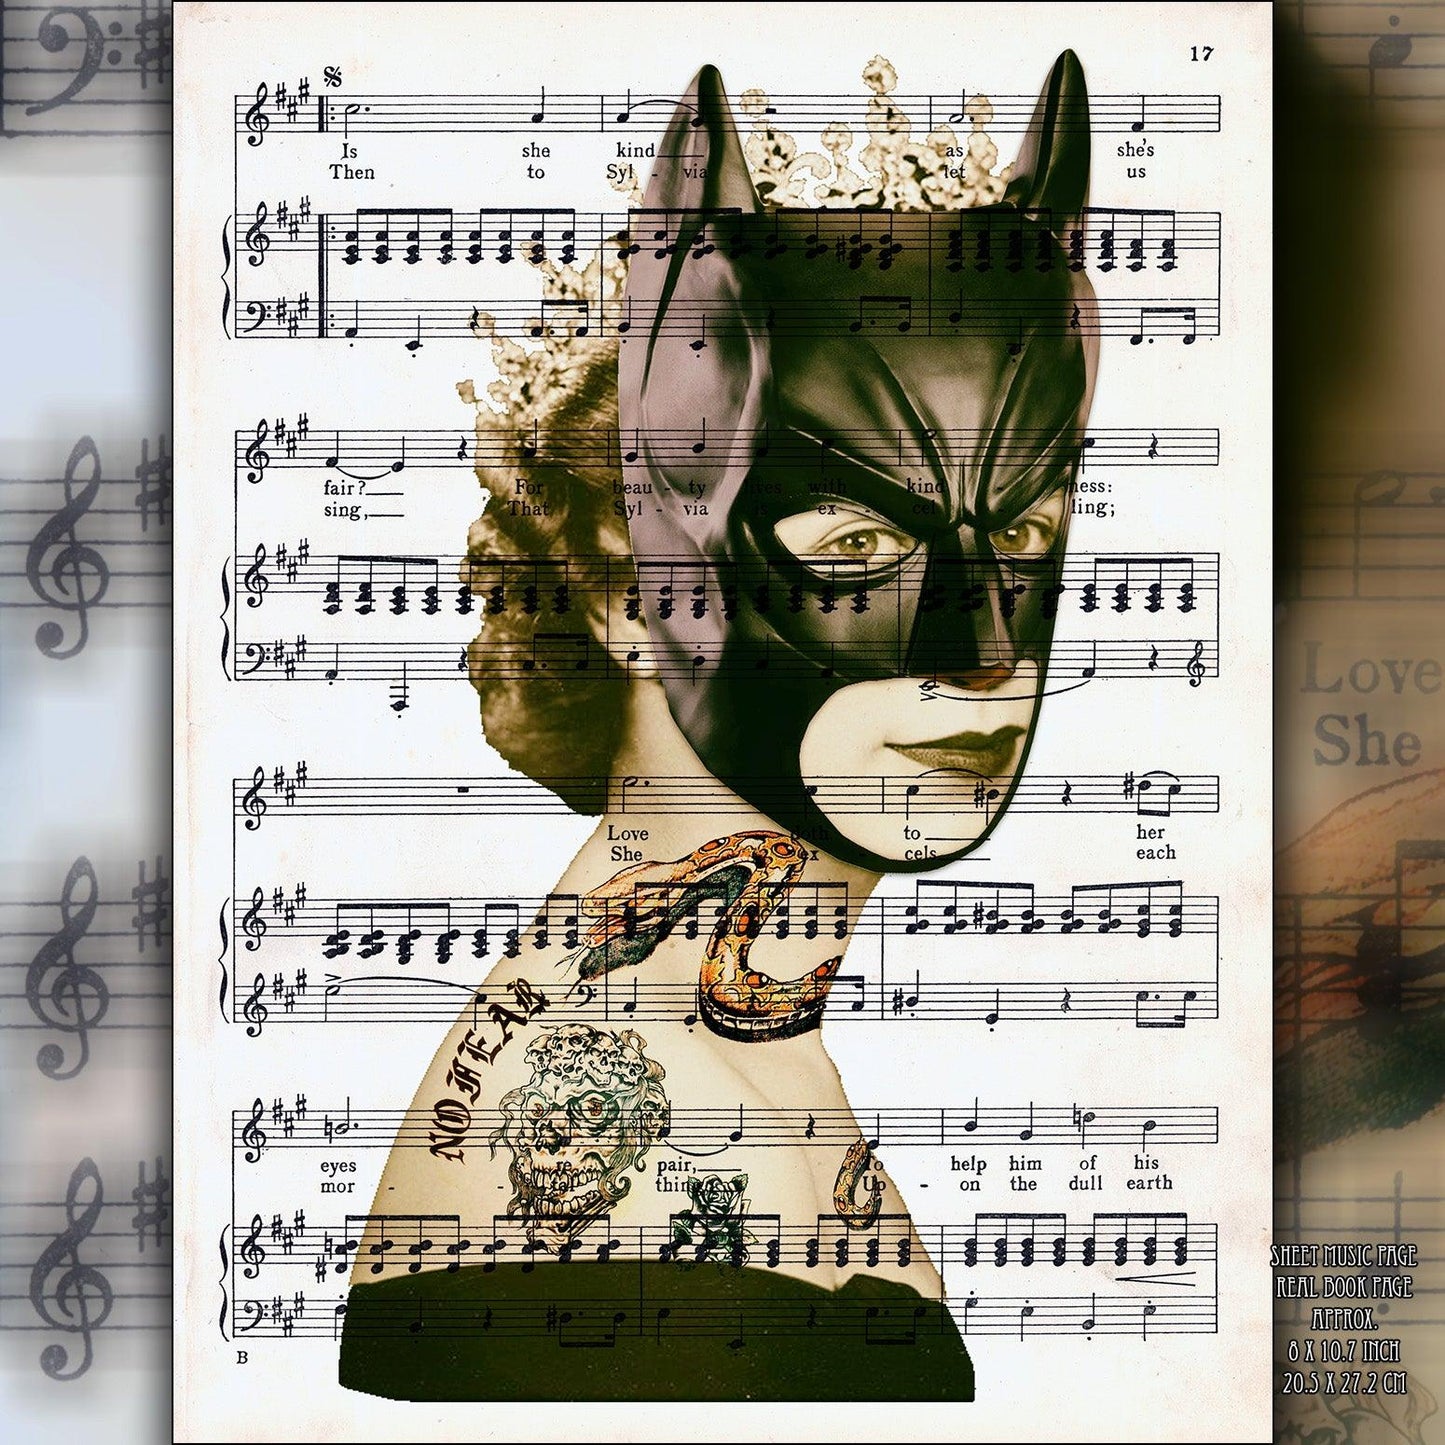 Queen Elizabeth II Batman Mask Art Poster on Vintage Dictionary Page - ArtCursor